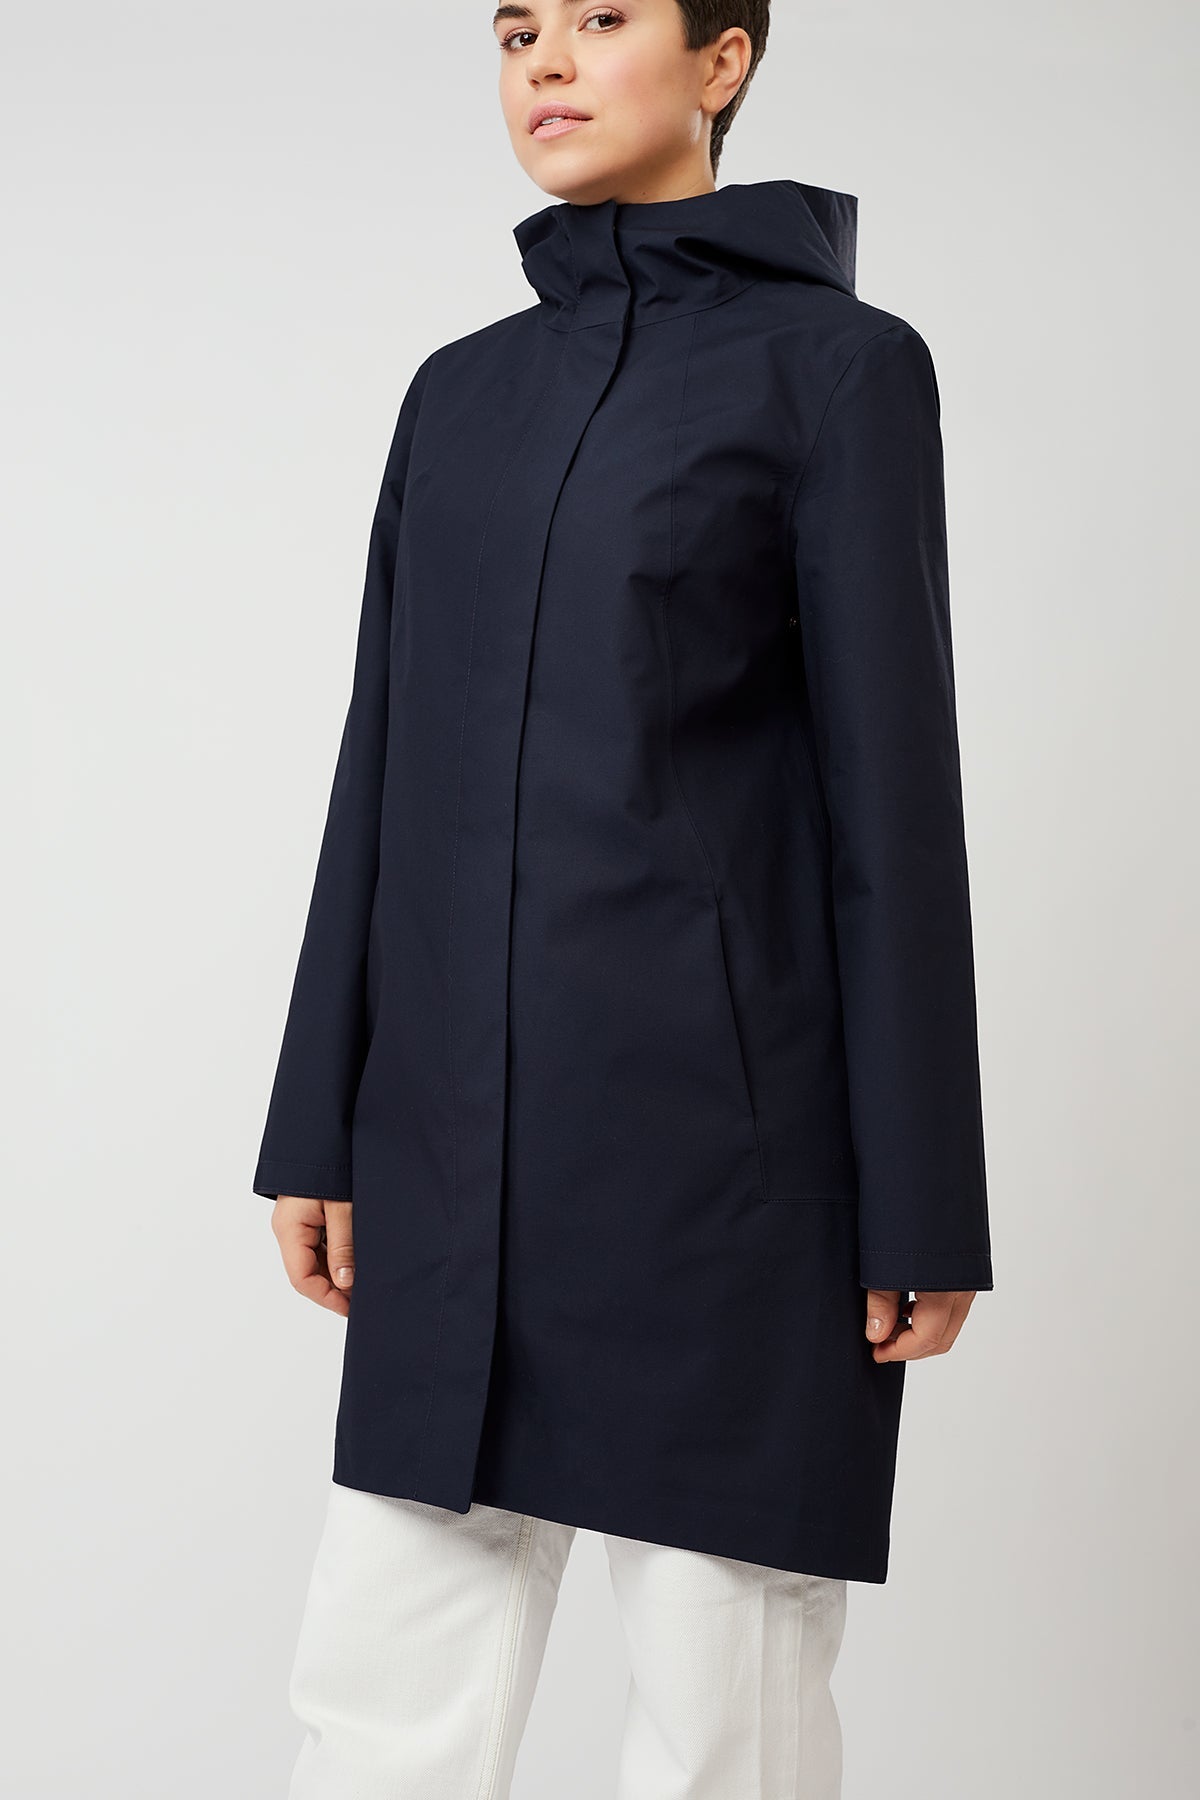 Coat Risana - navy